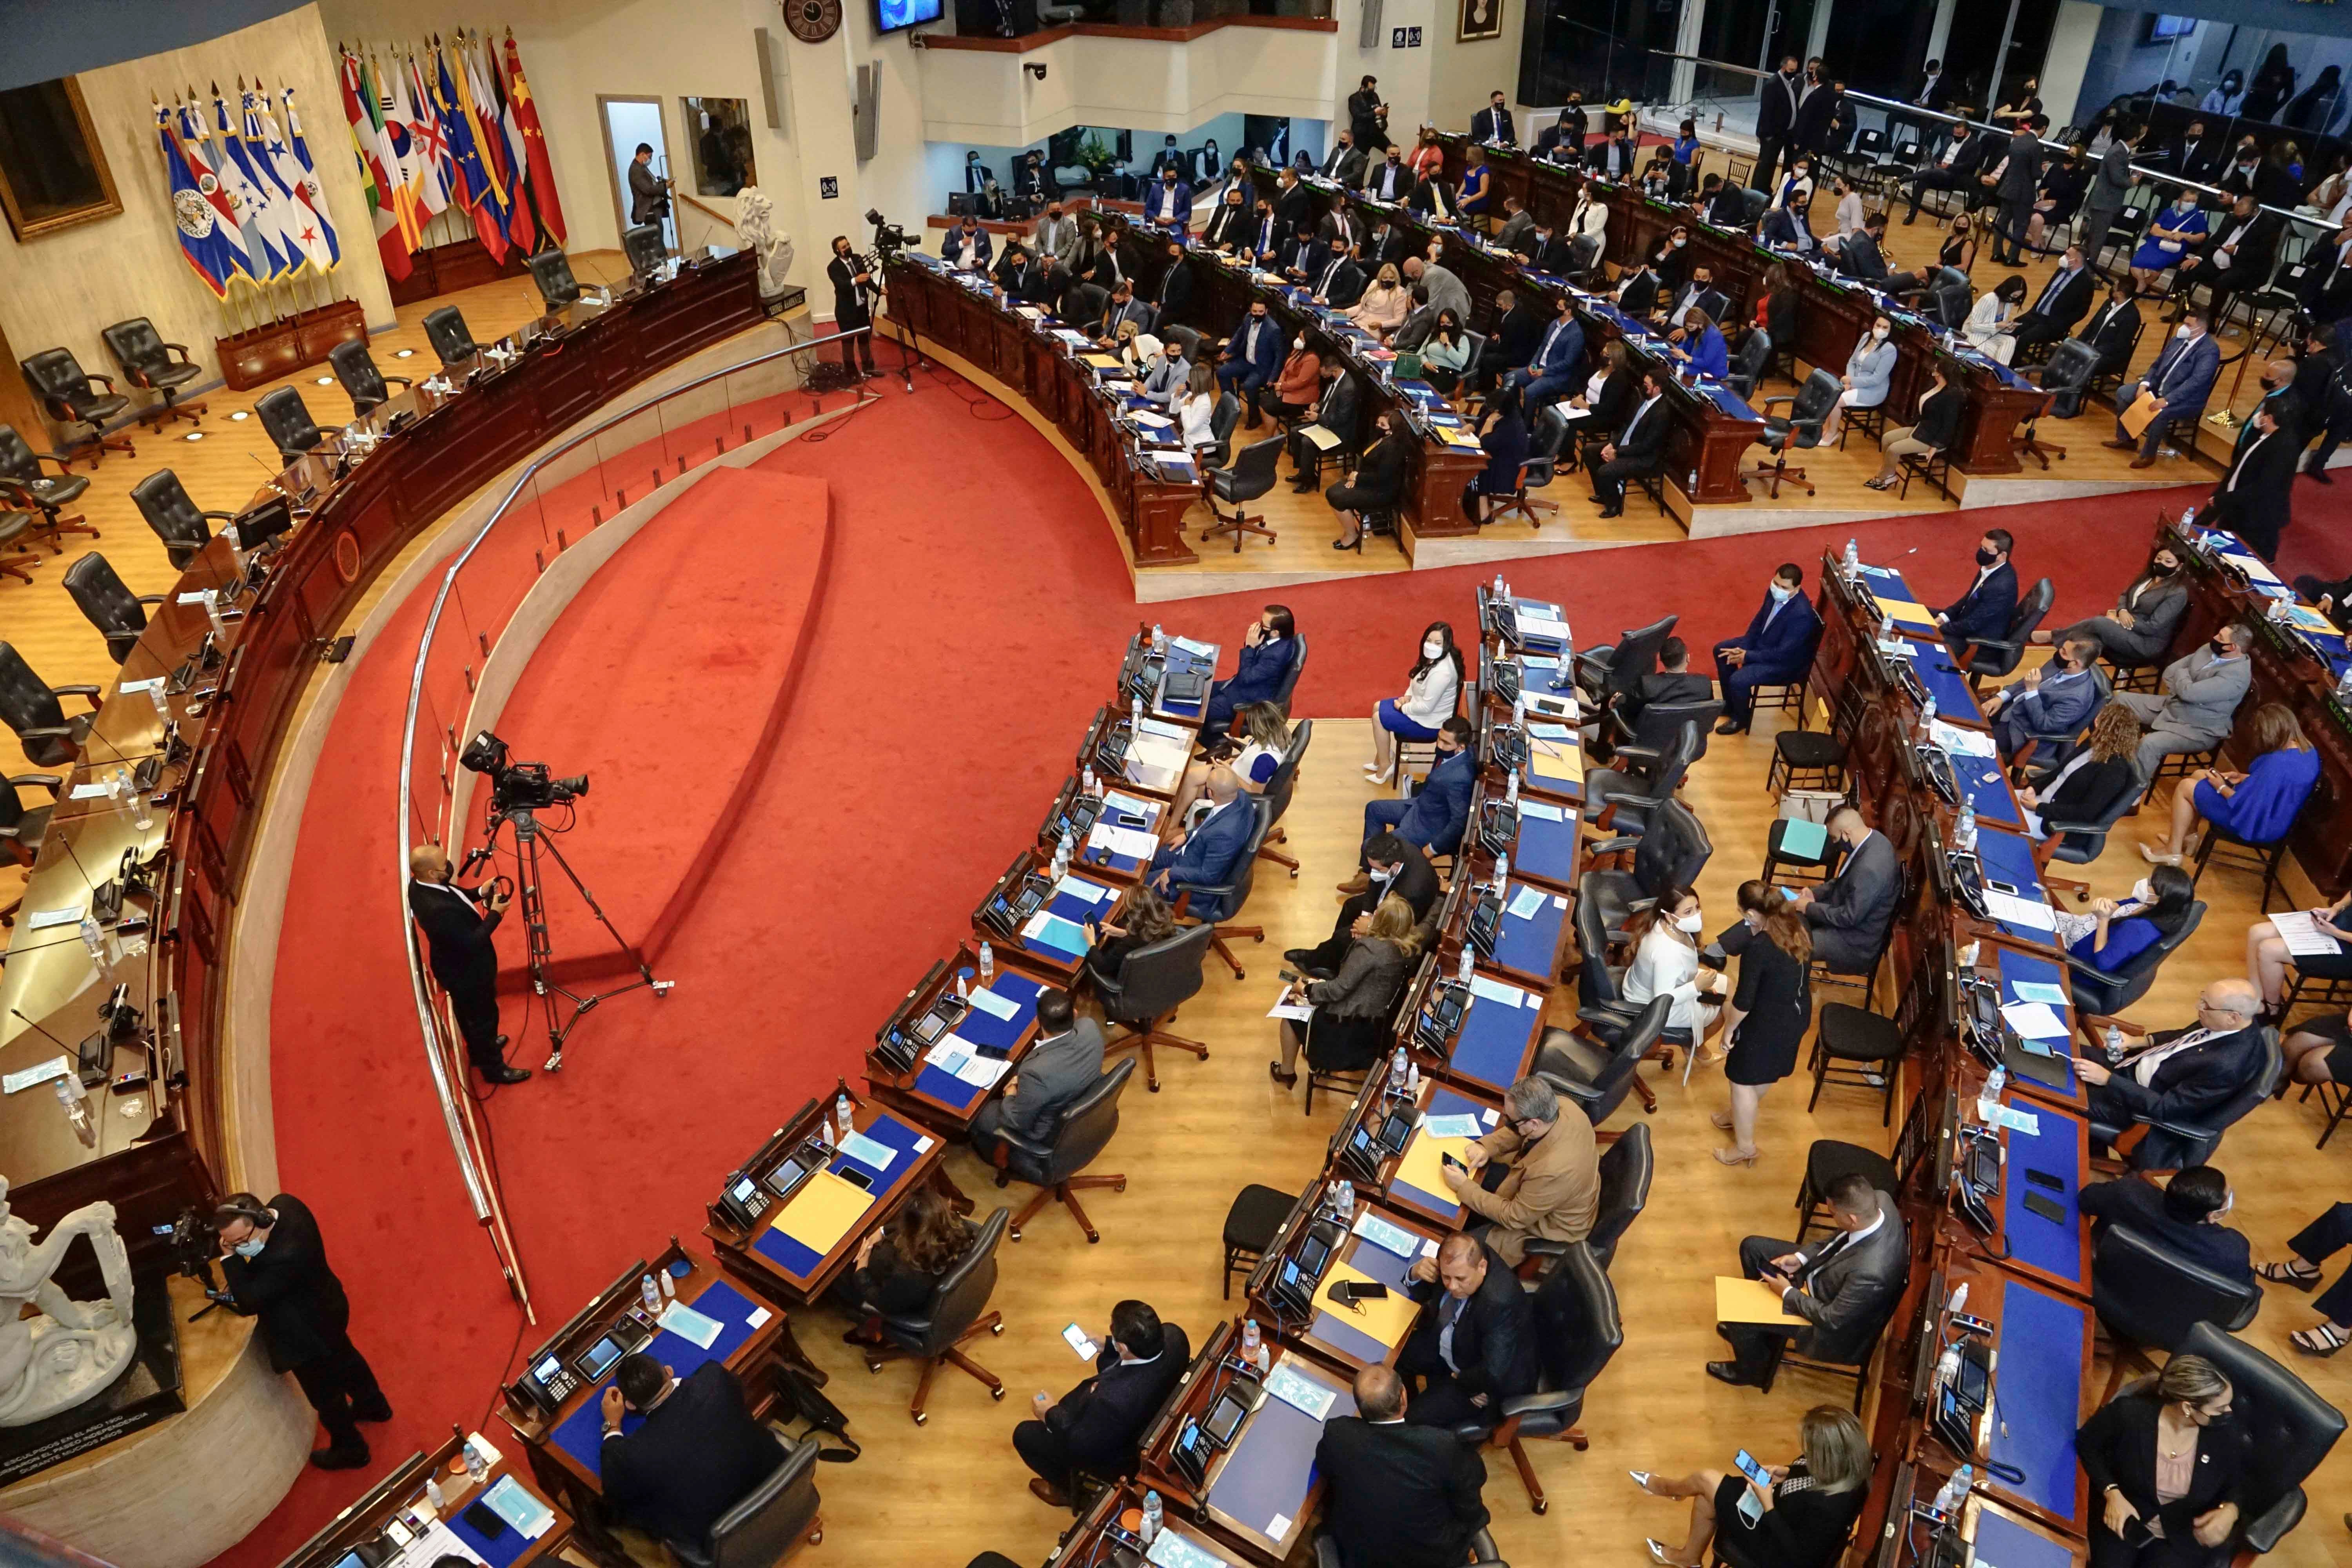 An interior view of the El Salvadoran legislative assembly